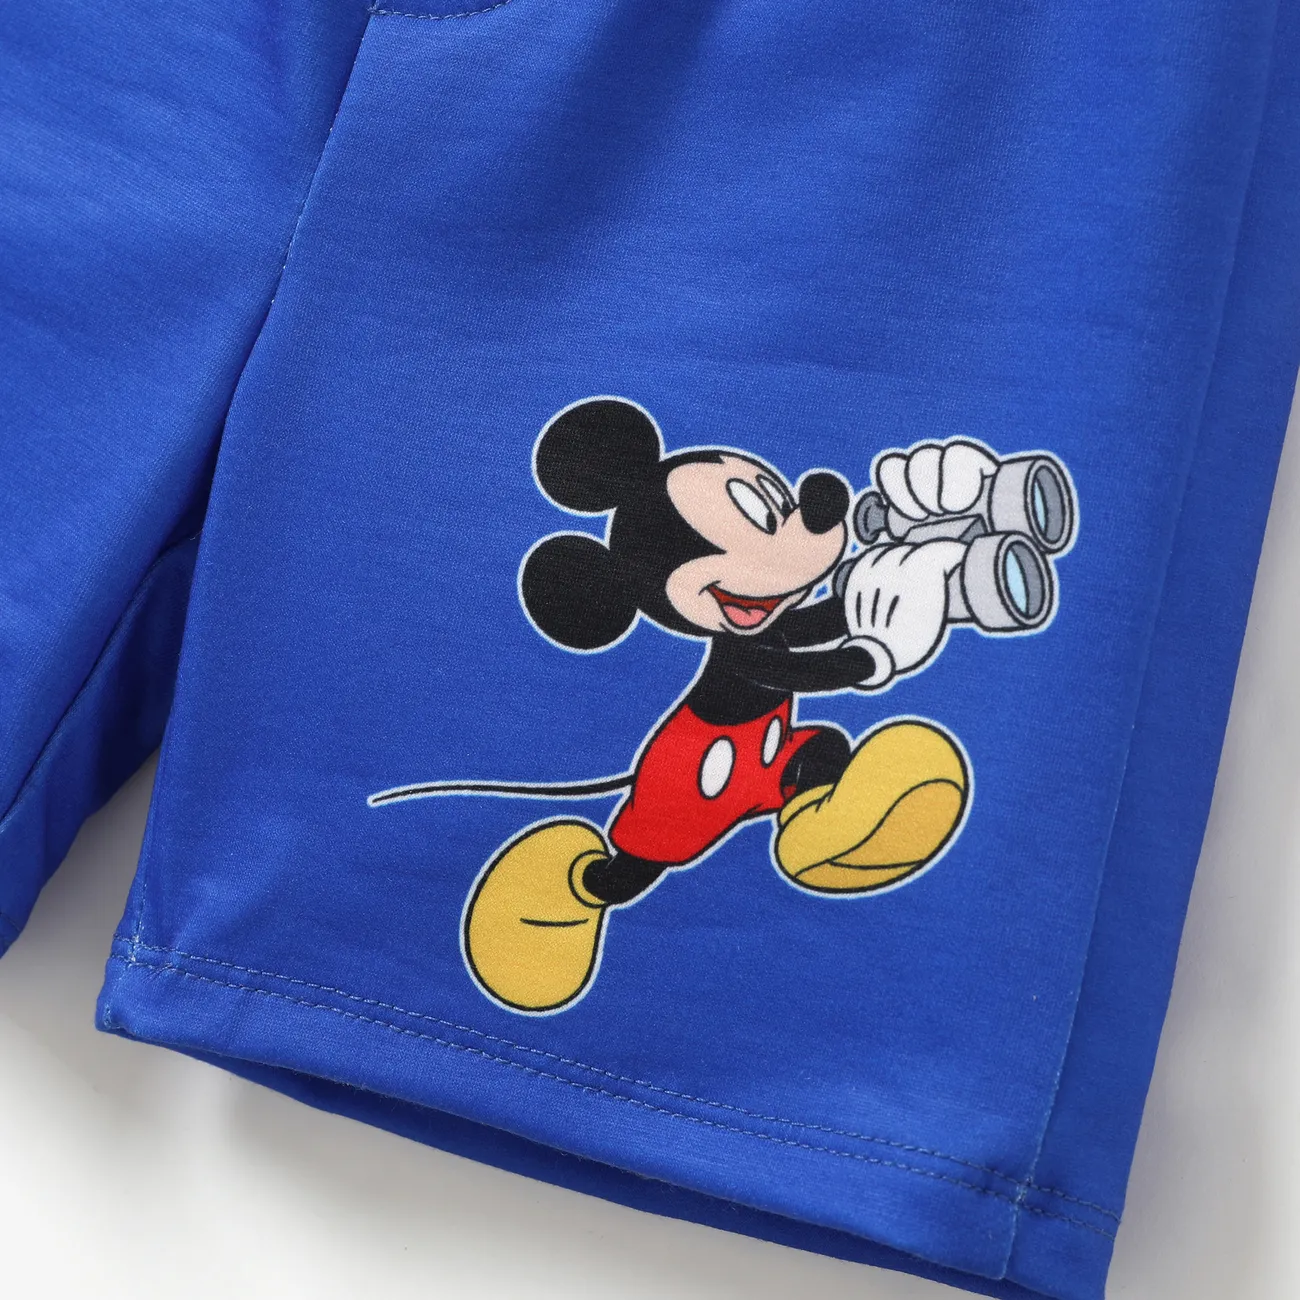 Disney Mickey and Friends Enfant en bas âge Garçon Couture de tissus Enfantin Dinosaure ensembles de t-shirts Bleu big image 1